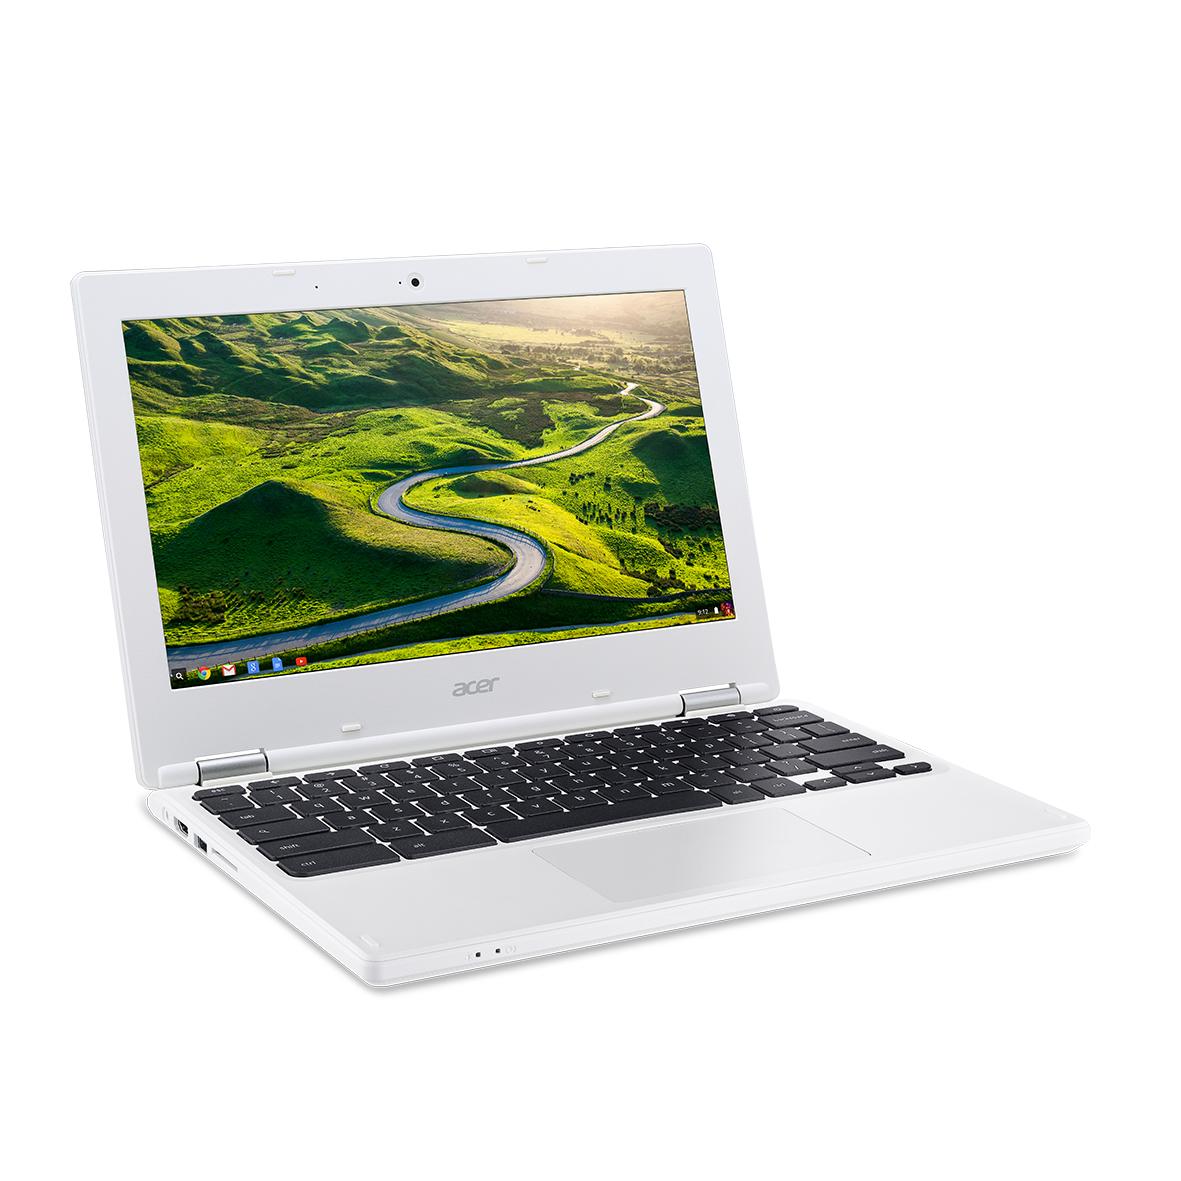 Acer-lance-un-nouveau-Chromebook-de-116-pouces-0.jpg